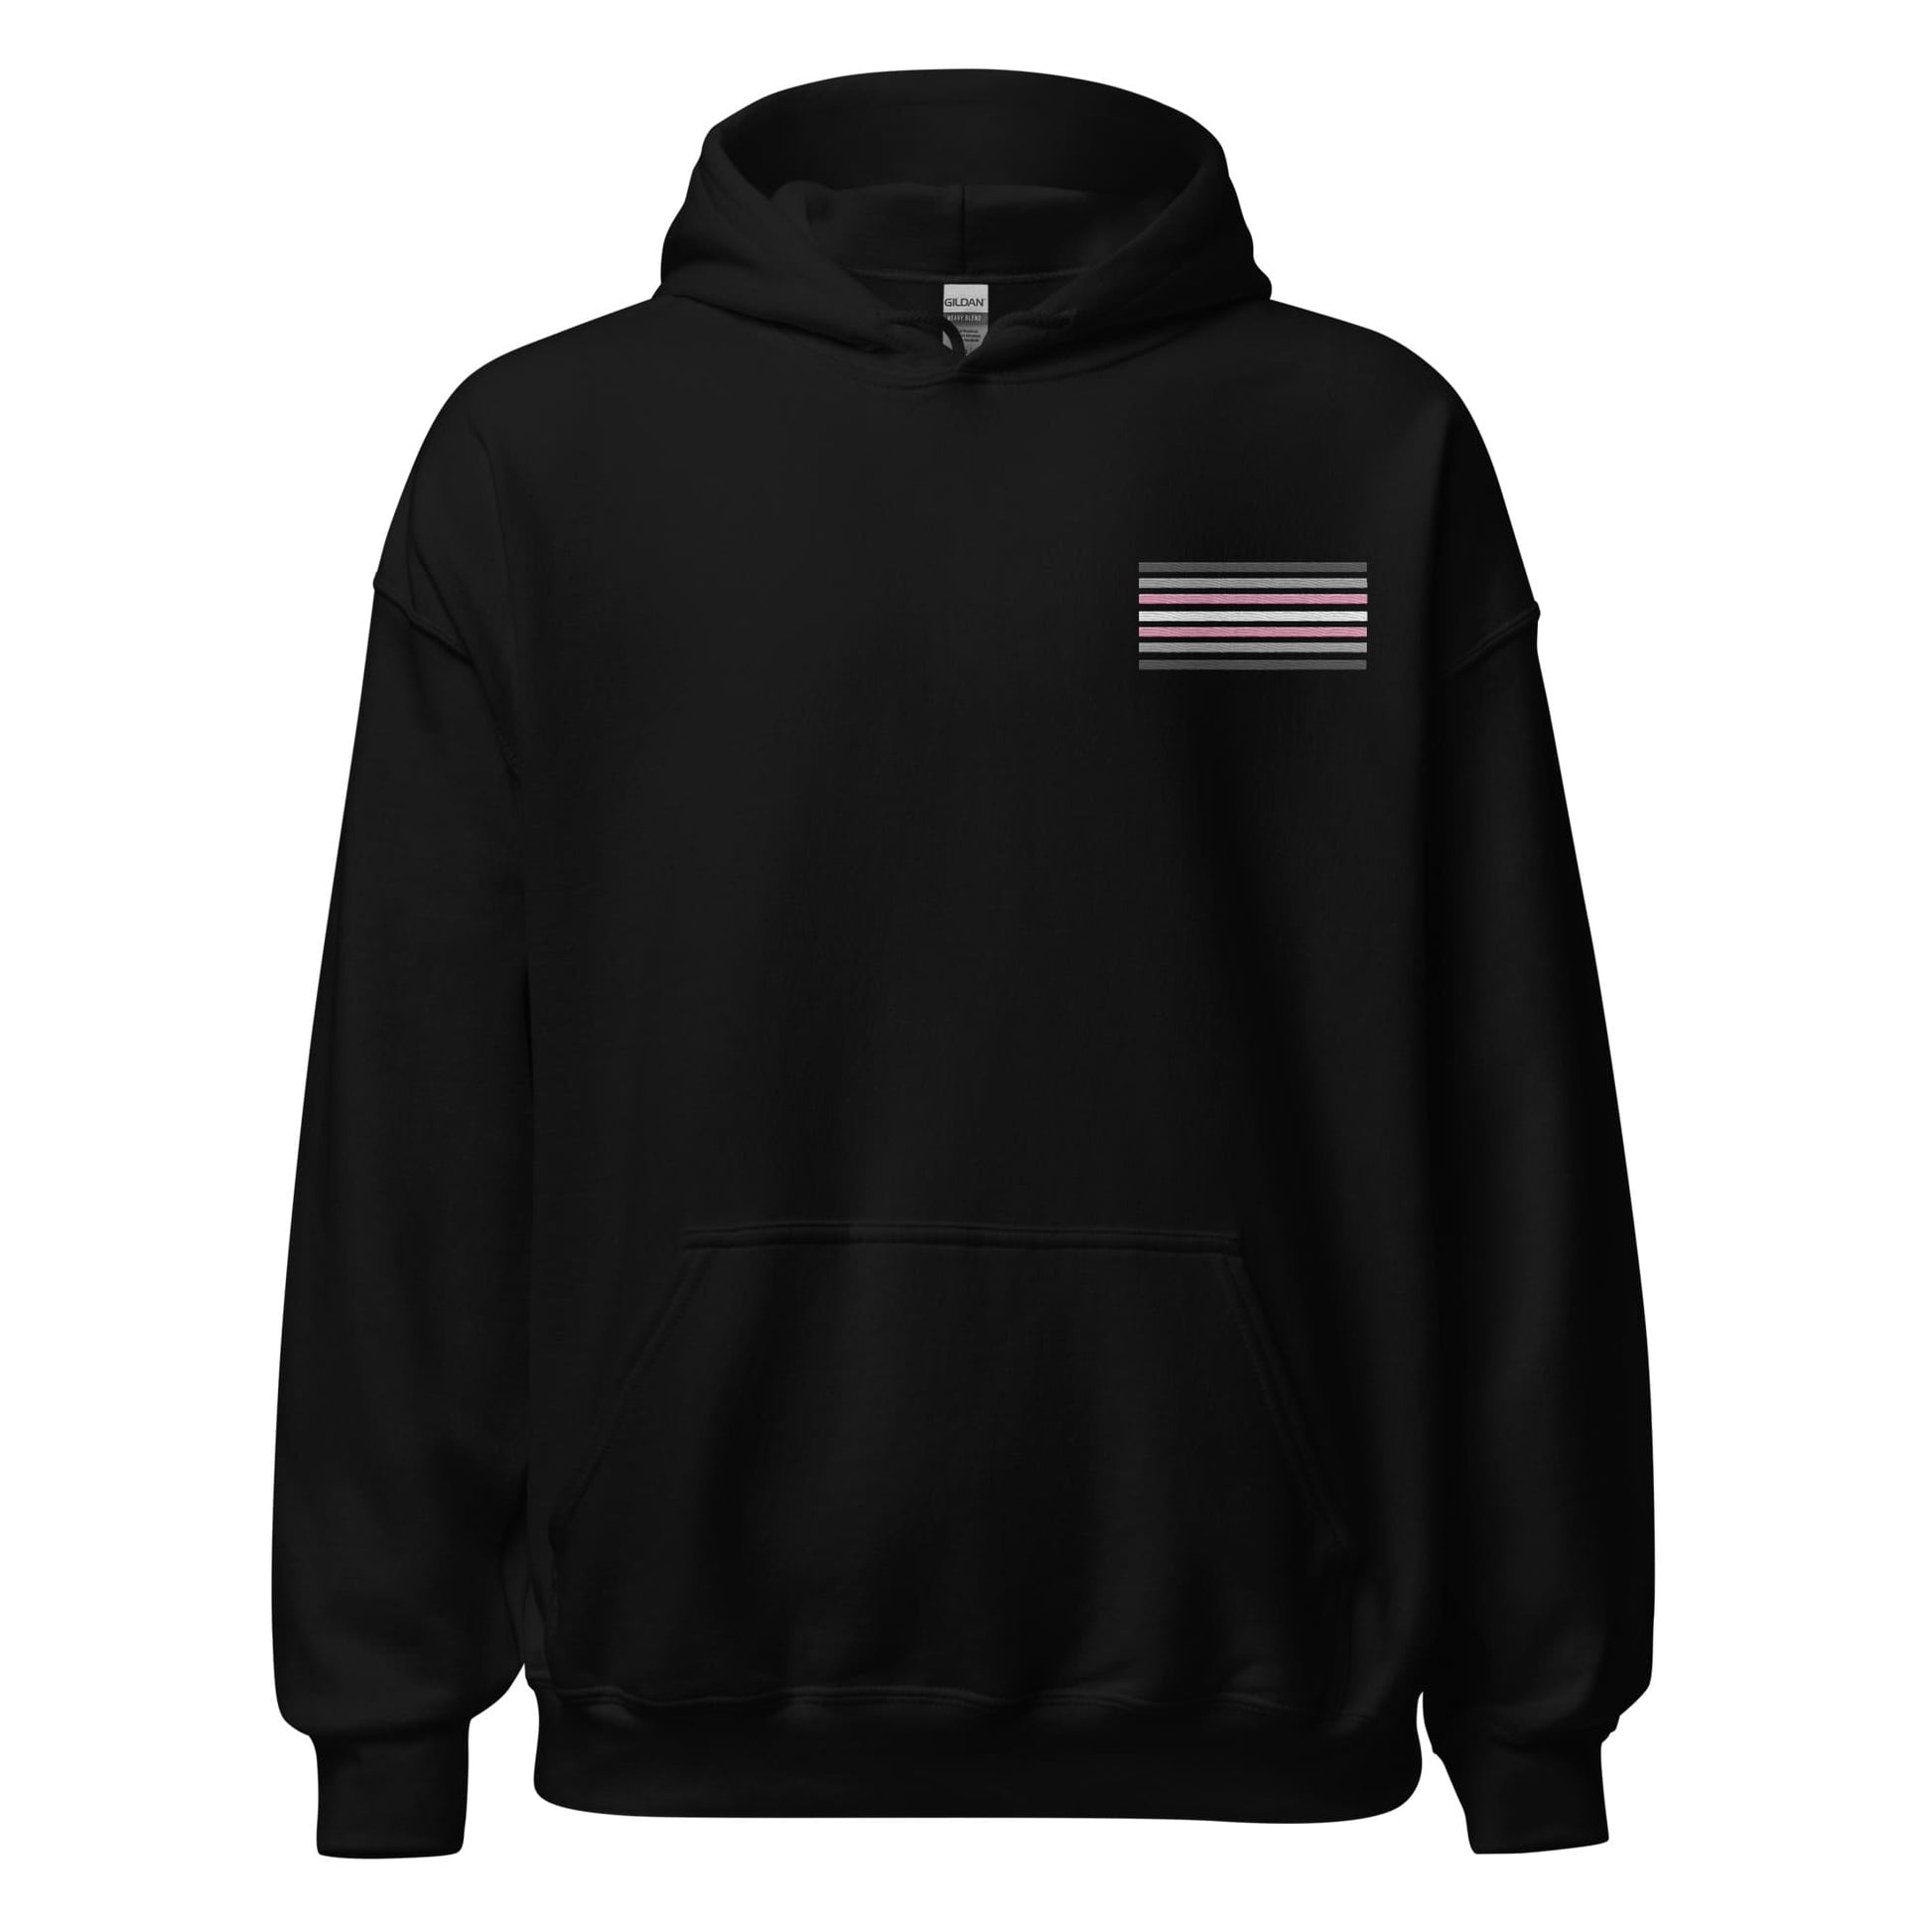 demigirl hoodie, subtle demigender pride flag embroidered pocket design hooded sweatshirt, hang